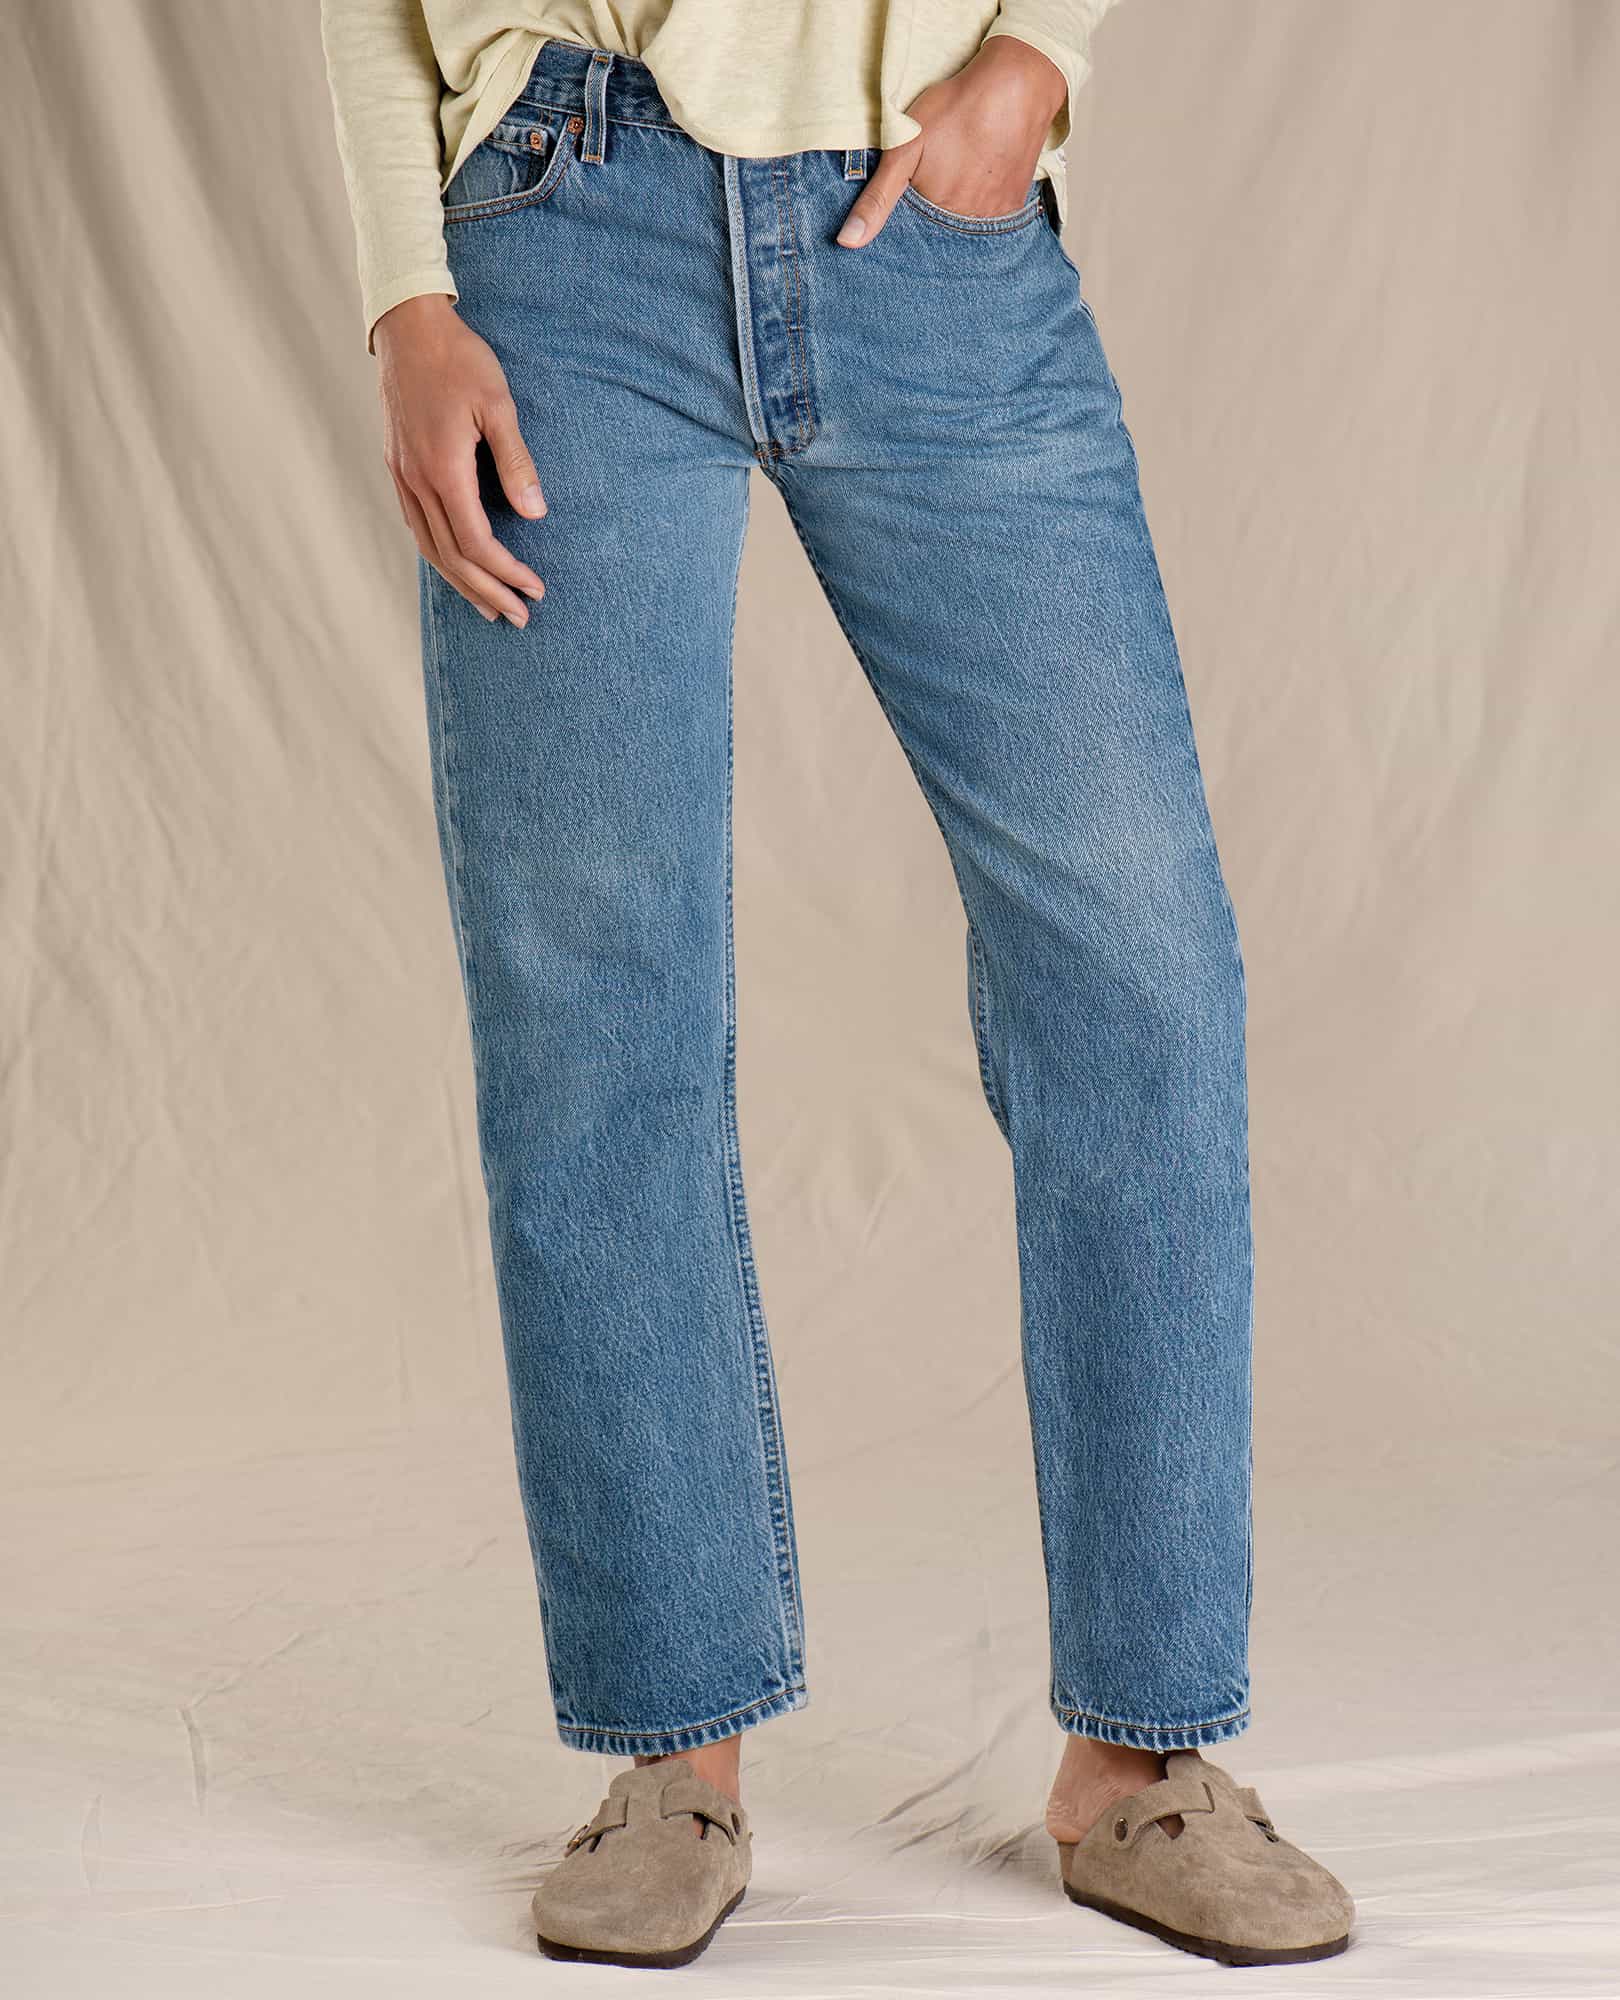 vintage 501 women's jeans